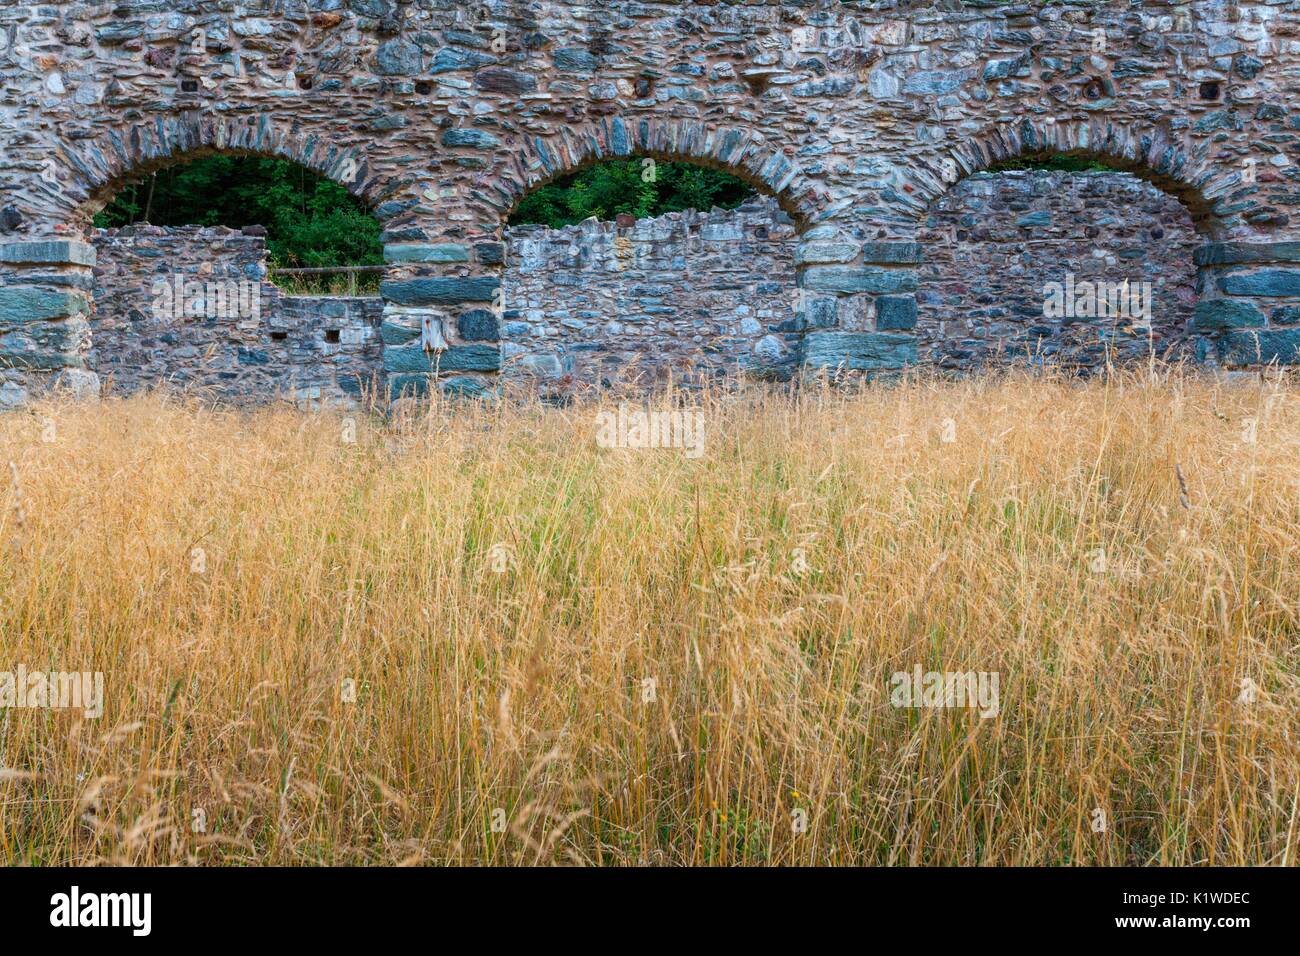 Il perimetro di mura ancora in piedi del carbonile depositi nel centro minerario di Valle Imperina, il Parco Nazionale delle Dolomiti Bellunesi, Rivamont Foto Stock